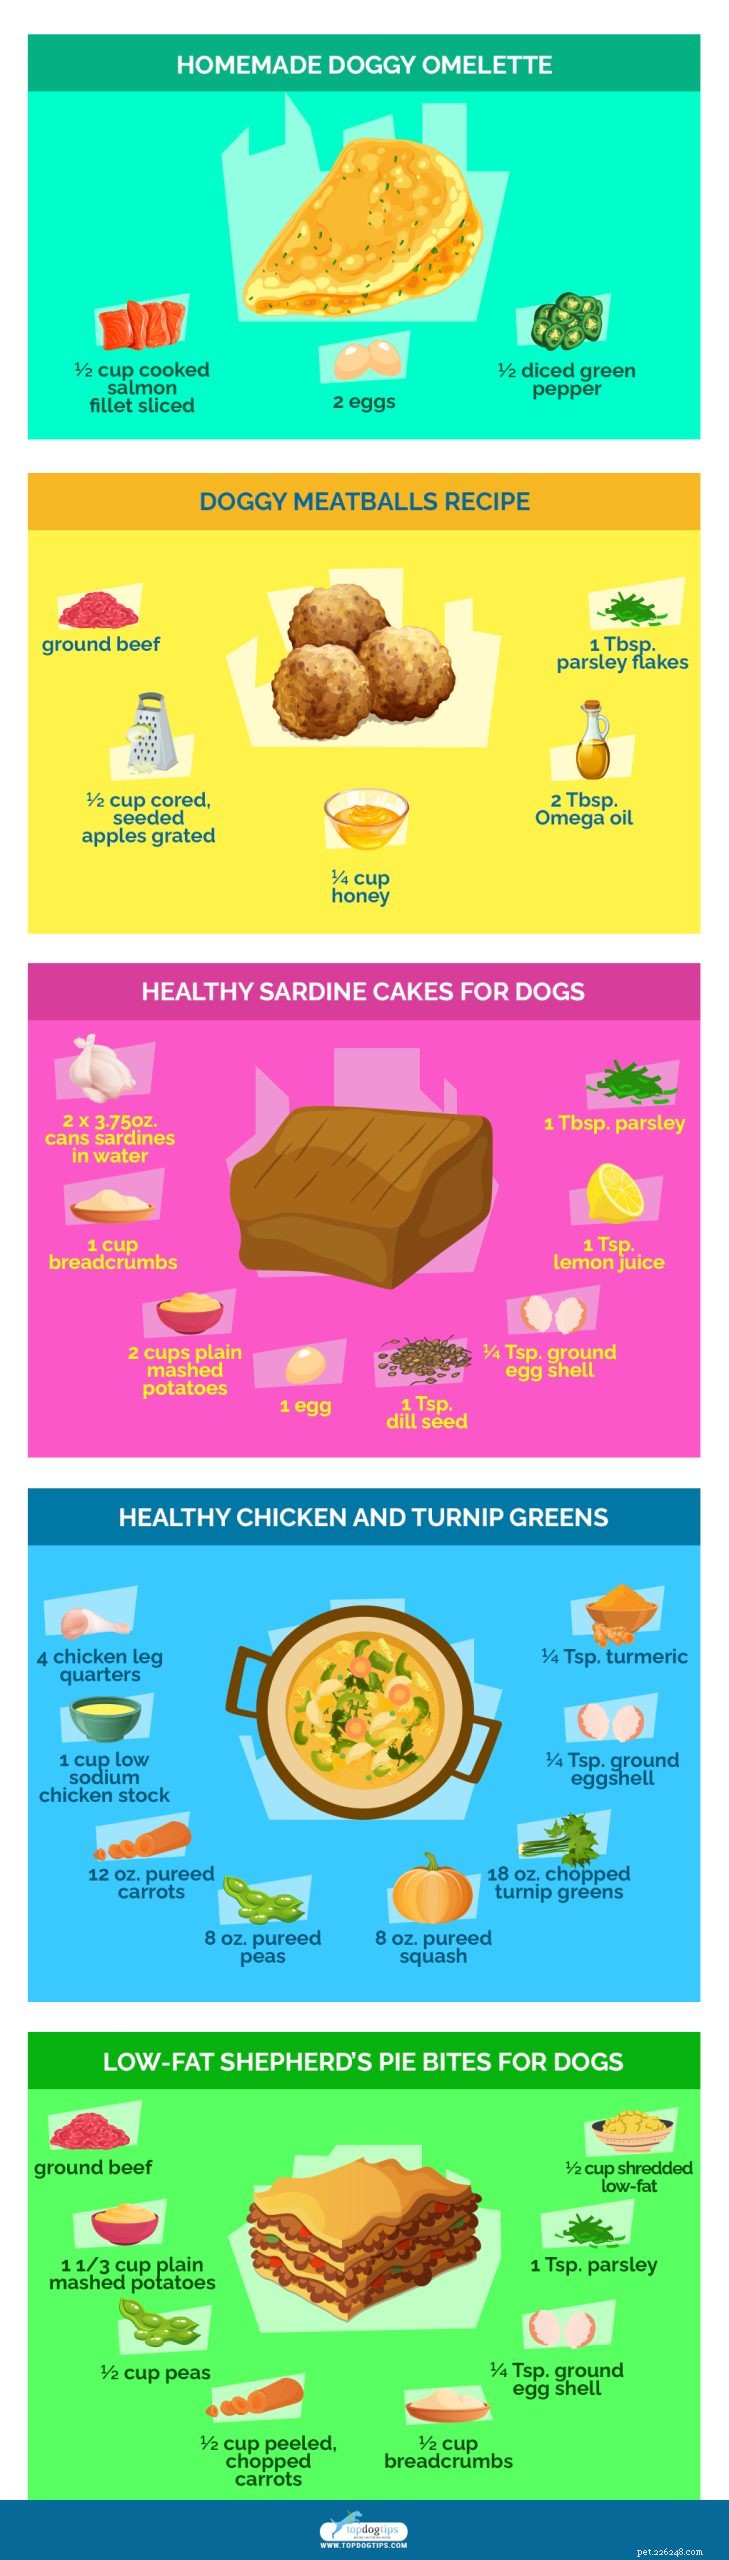 가장 건강한 수제 개밥 요리법 20가지 